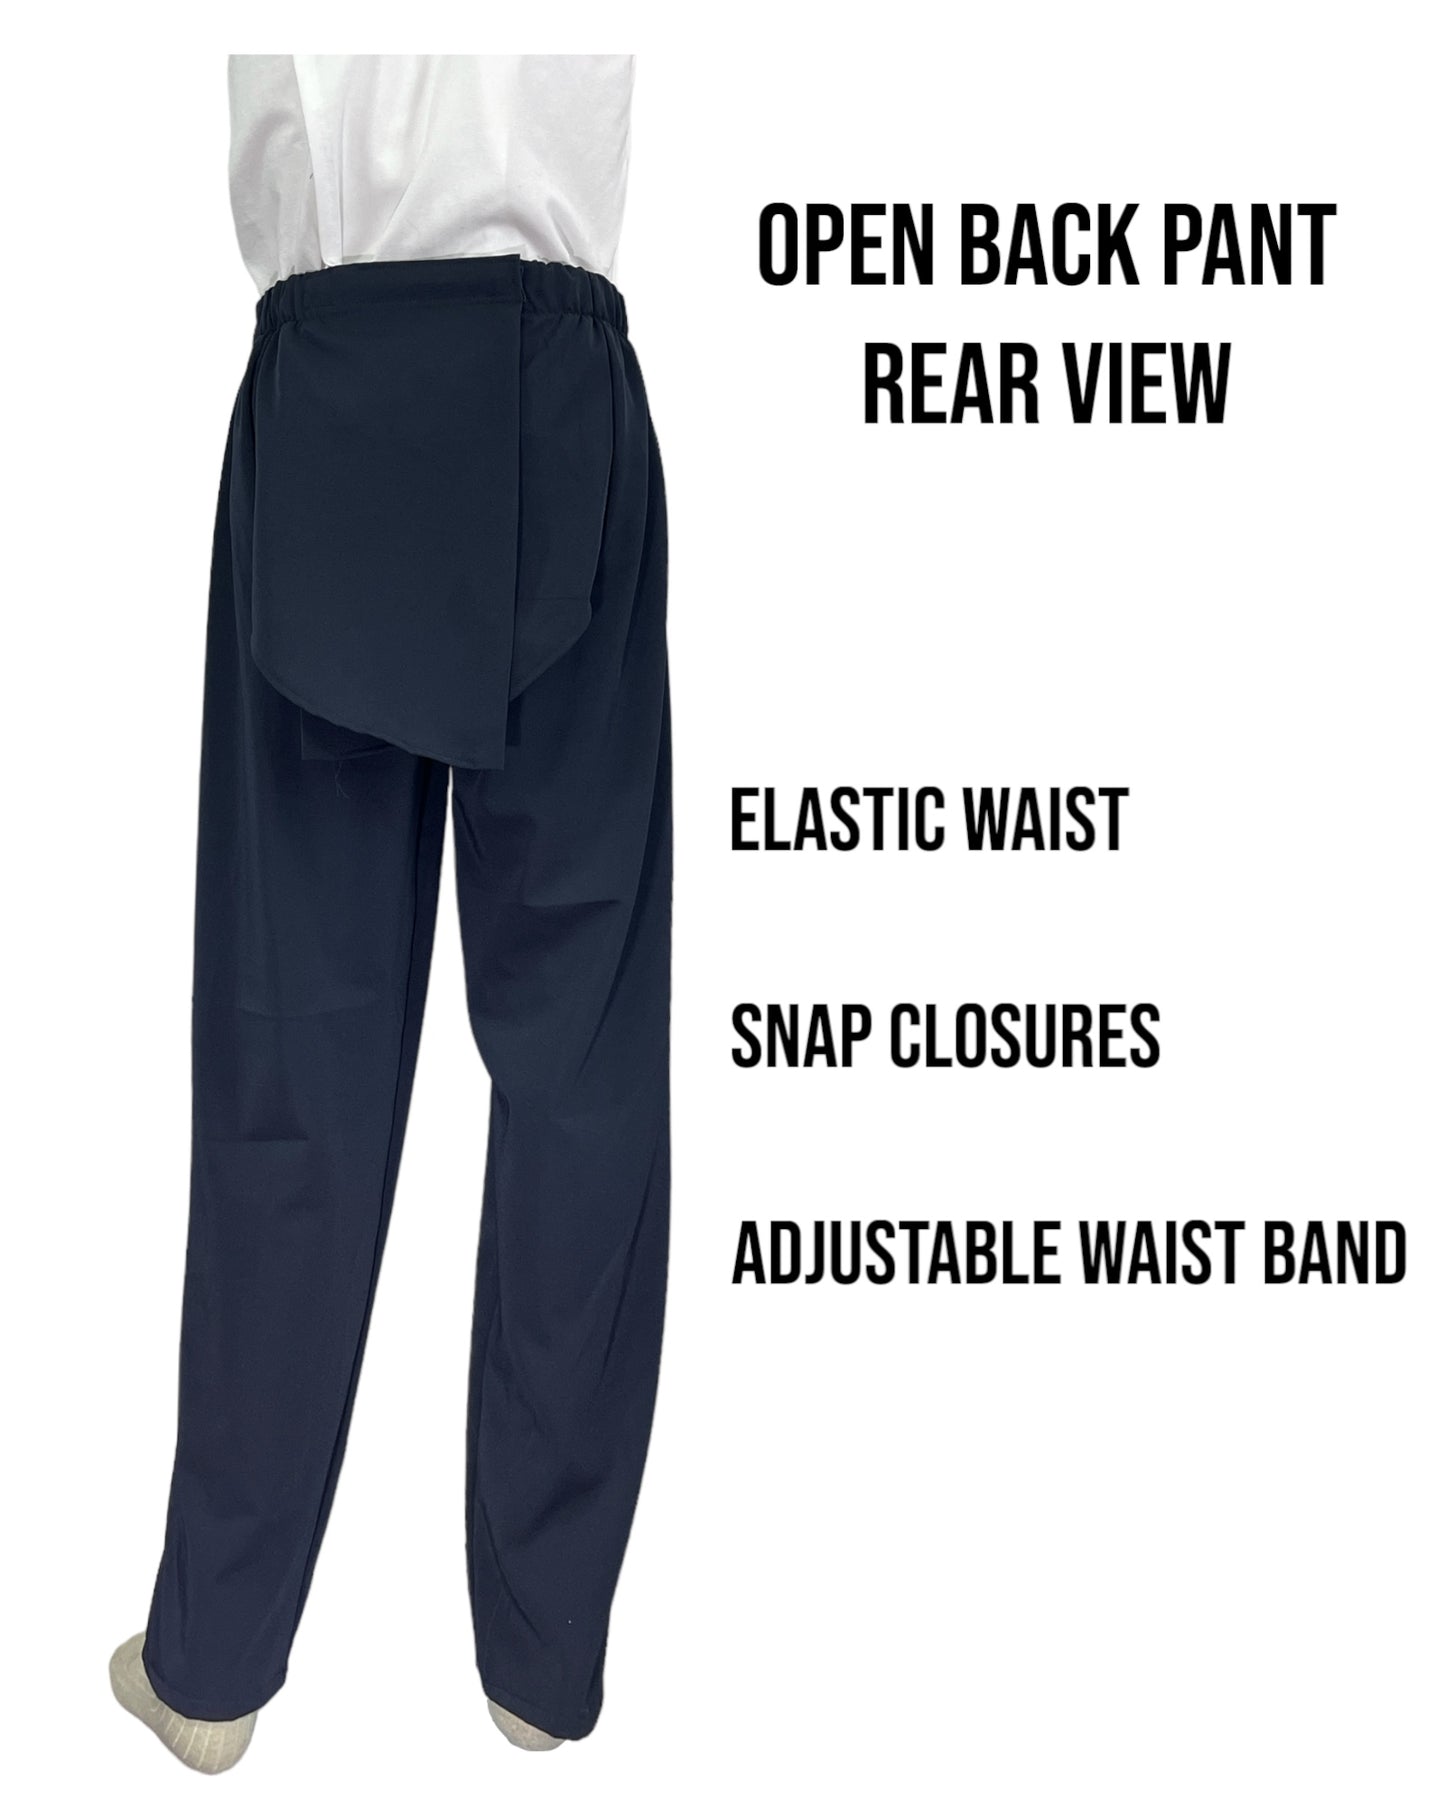 Adaptive Open Back Cotton Knit Pants